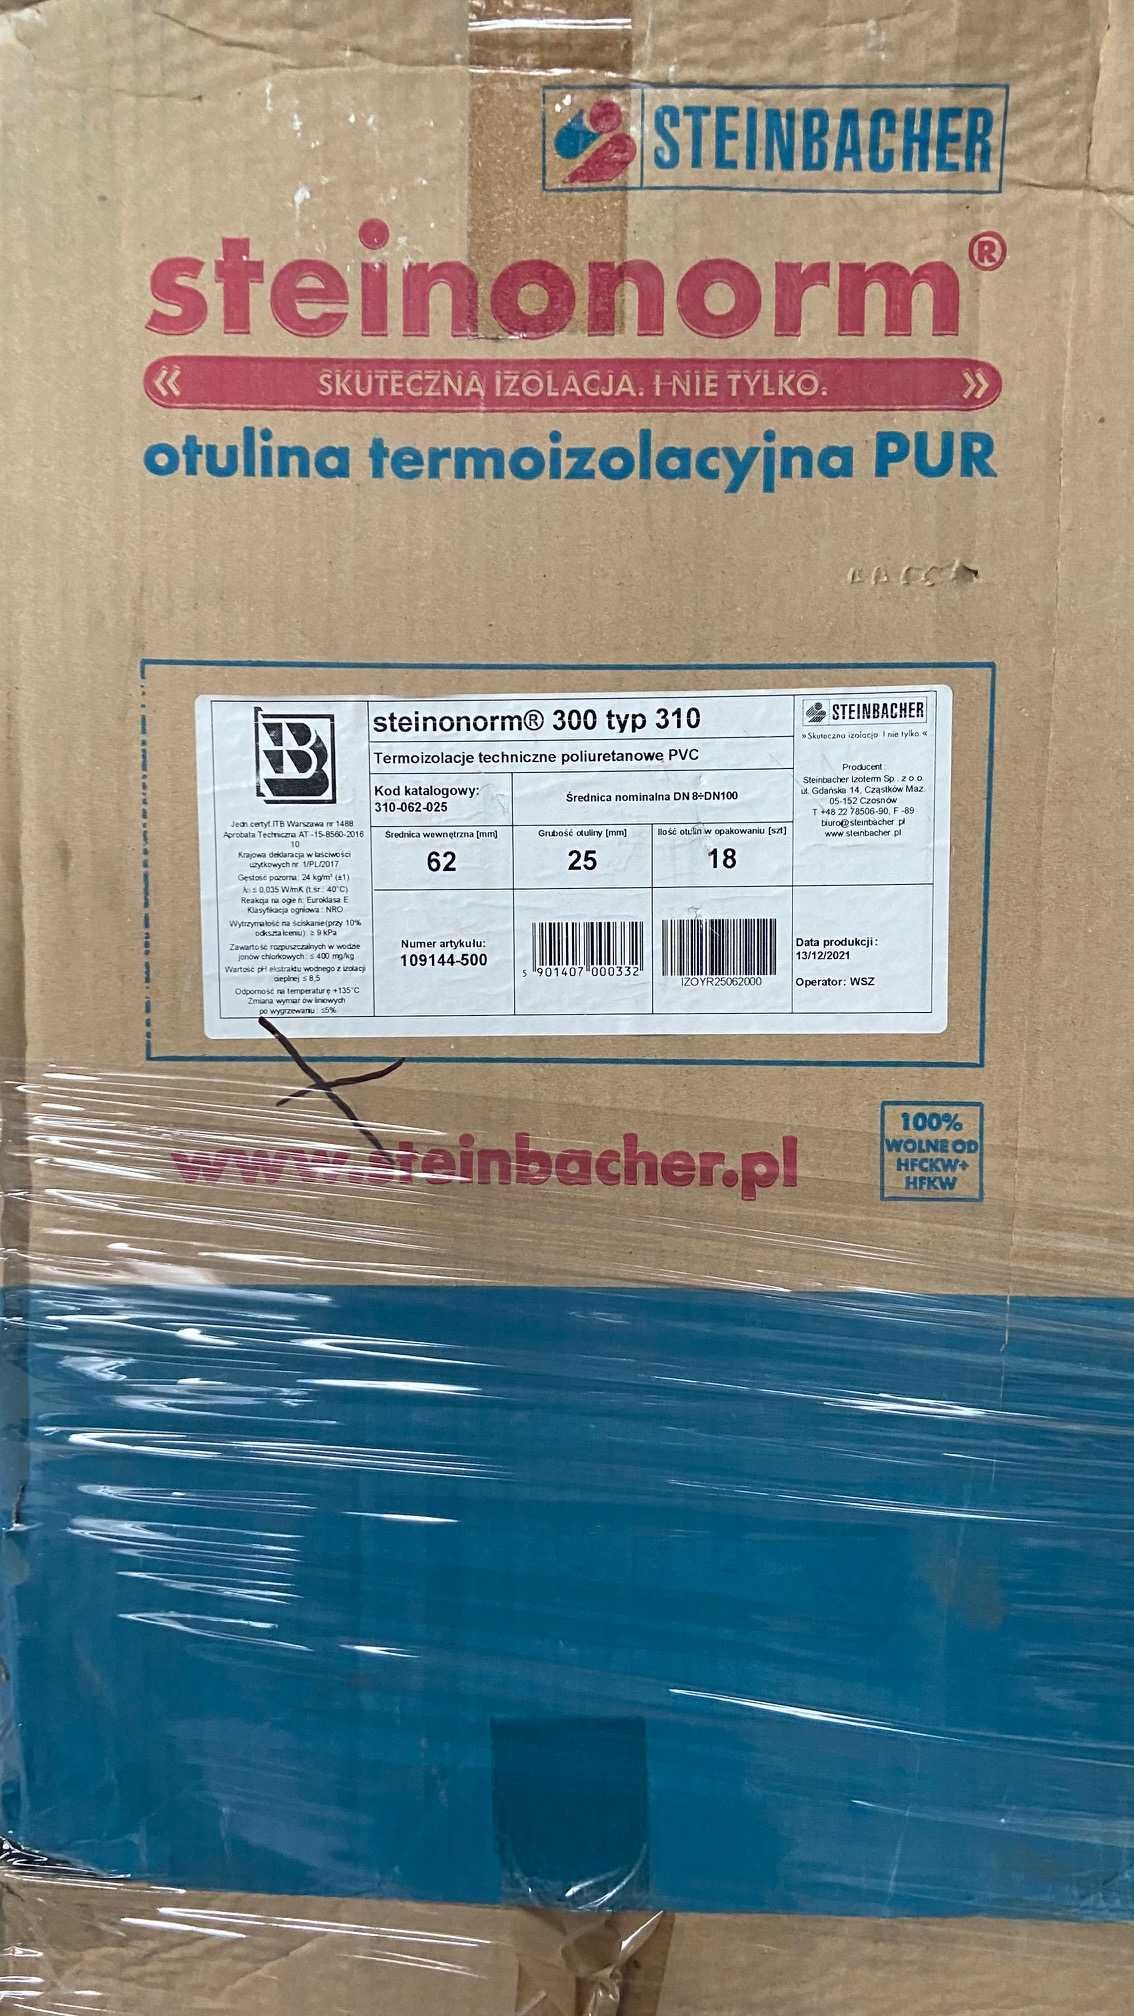 Otulina termoizolacyjna producenta STEINOBORM